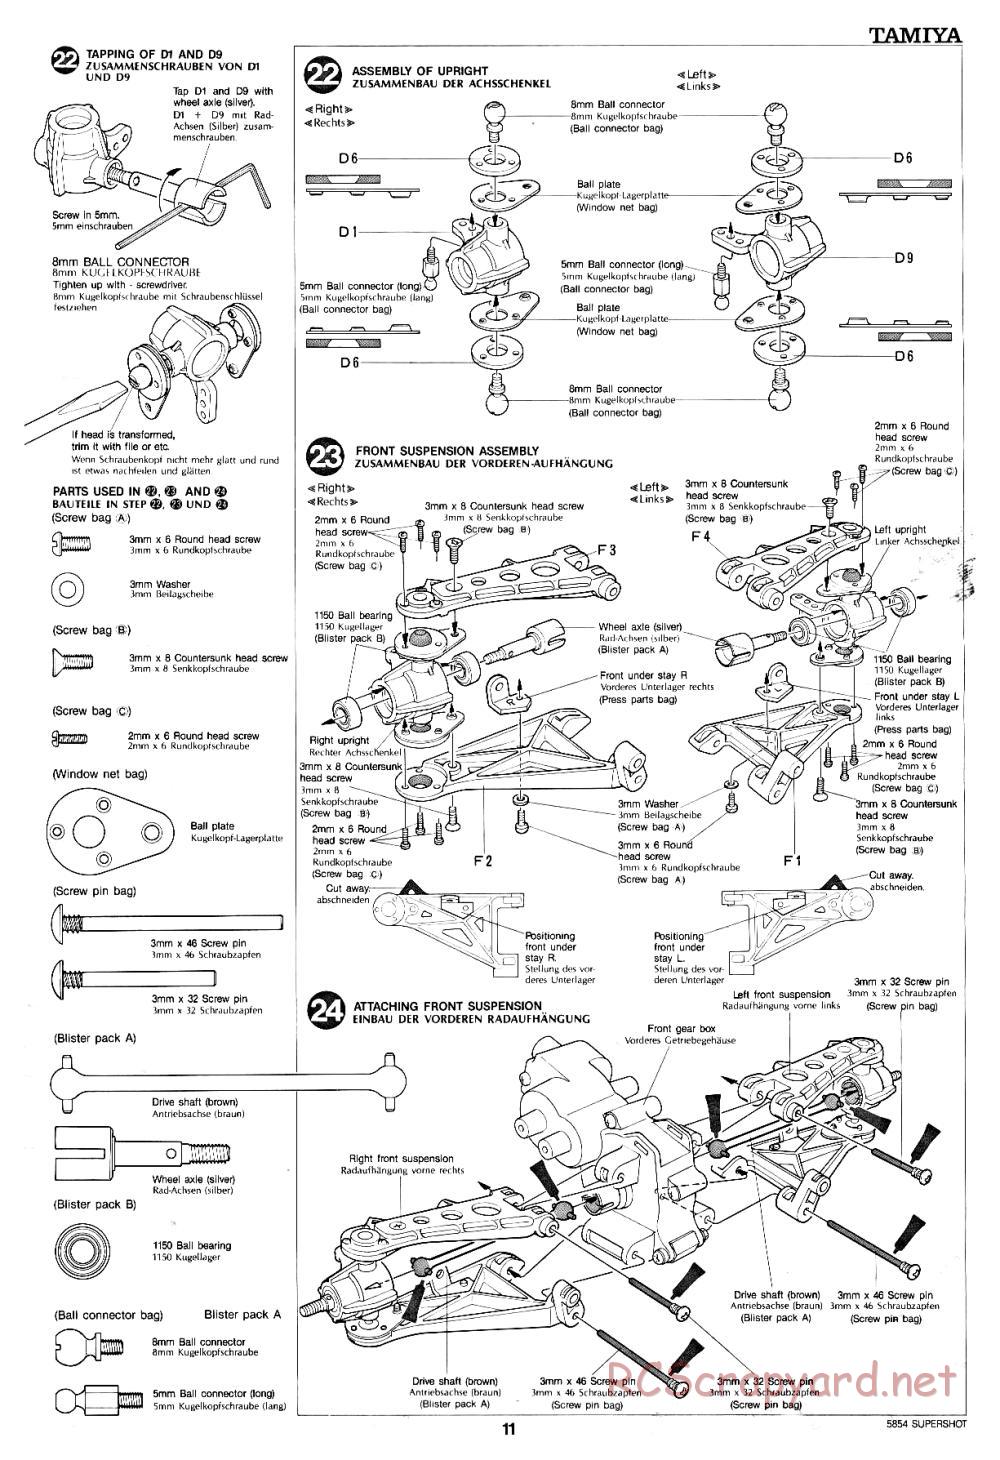 Tamiya - Supershot - 58054 - Manual - Page 11